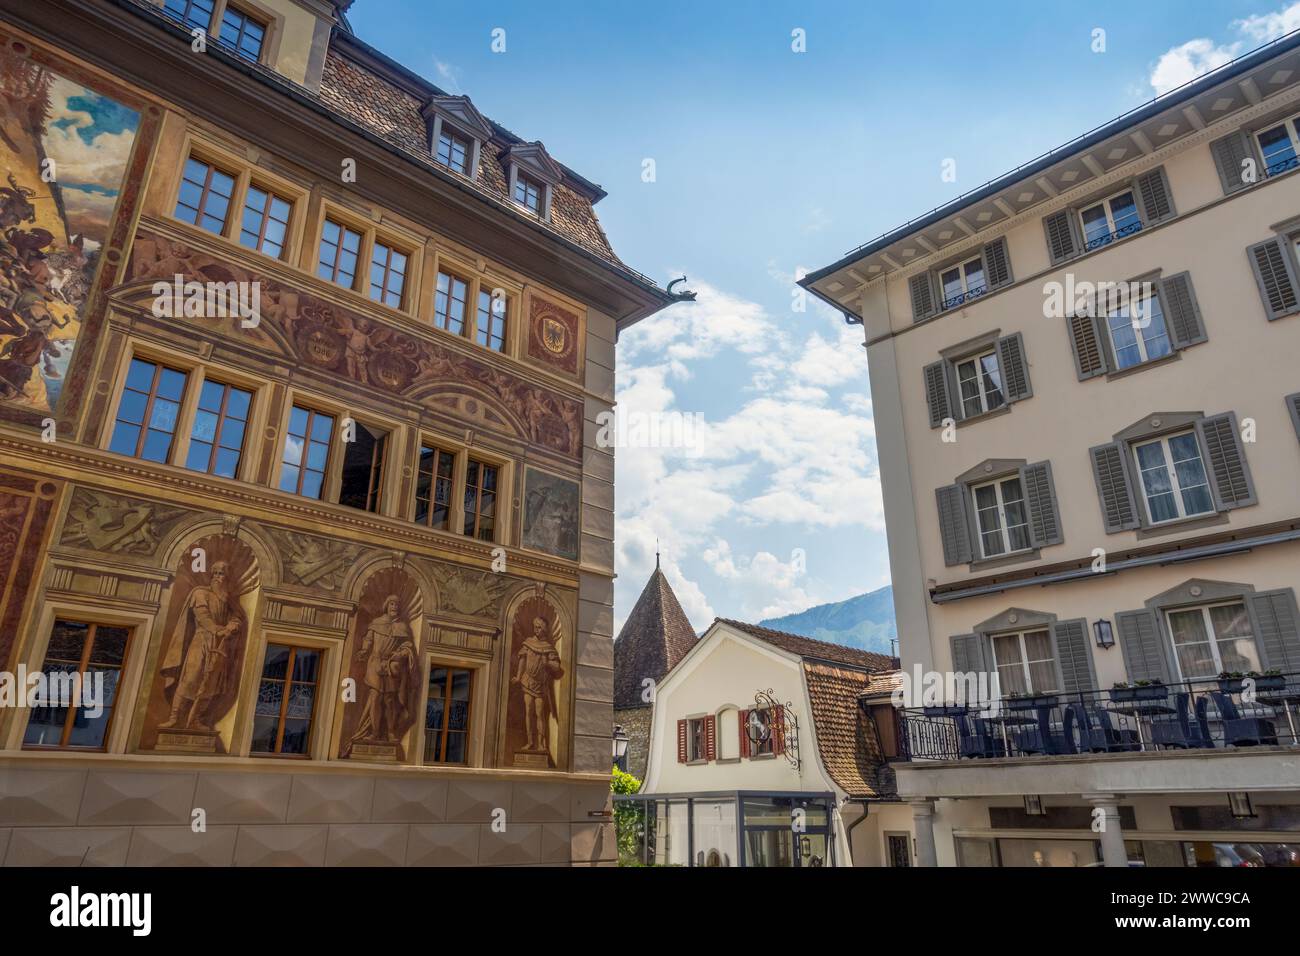 Town hall in old city of Schwyz, Central Switzerland, Switzerland Stock Photo